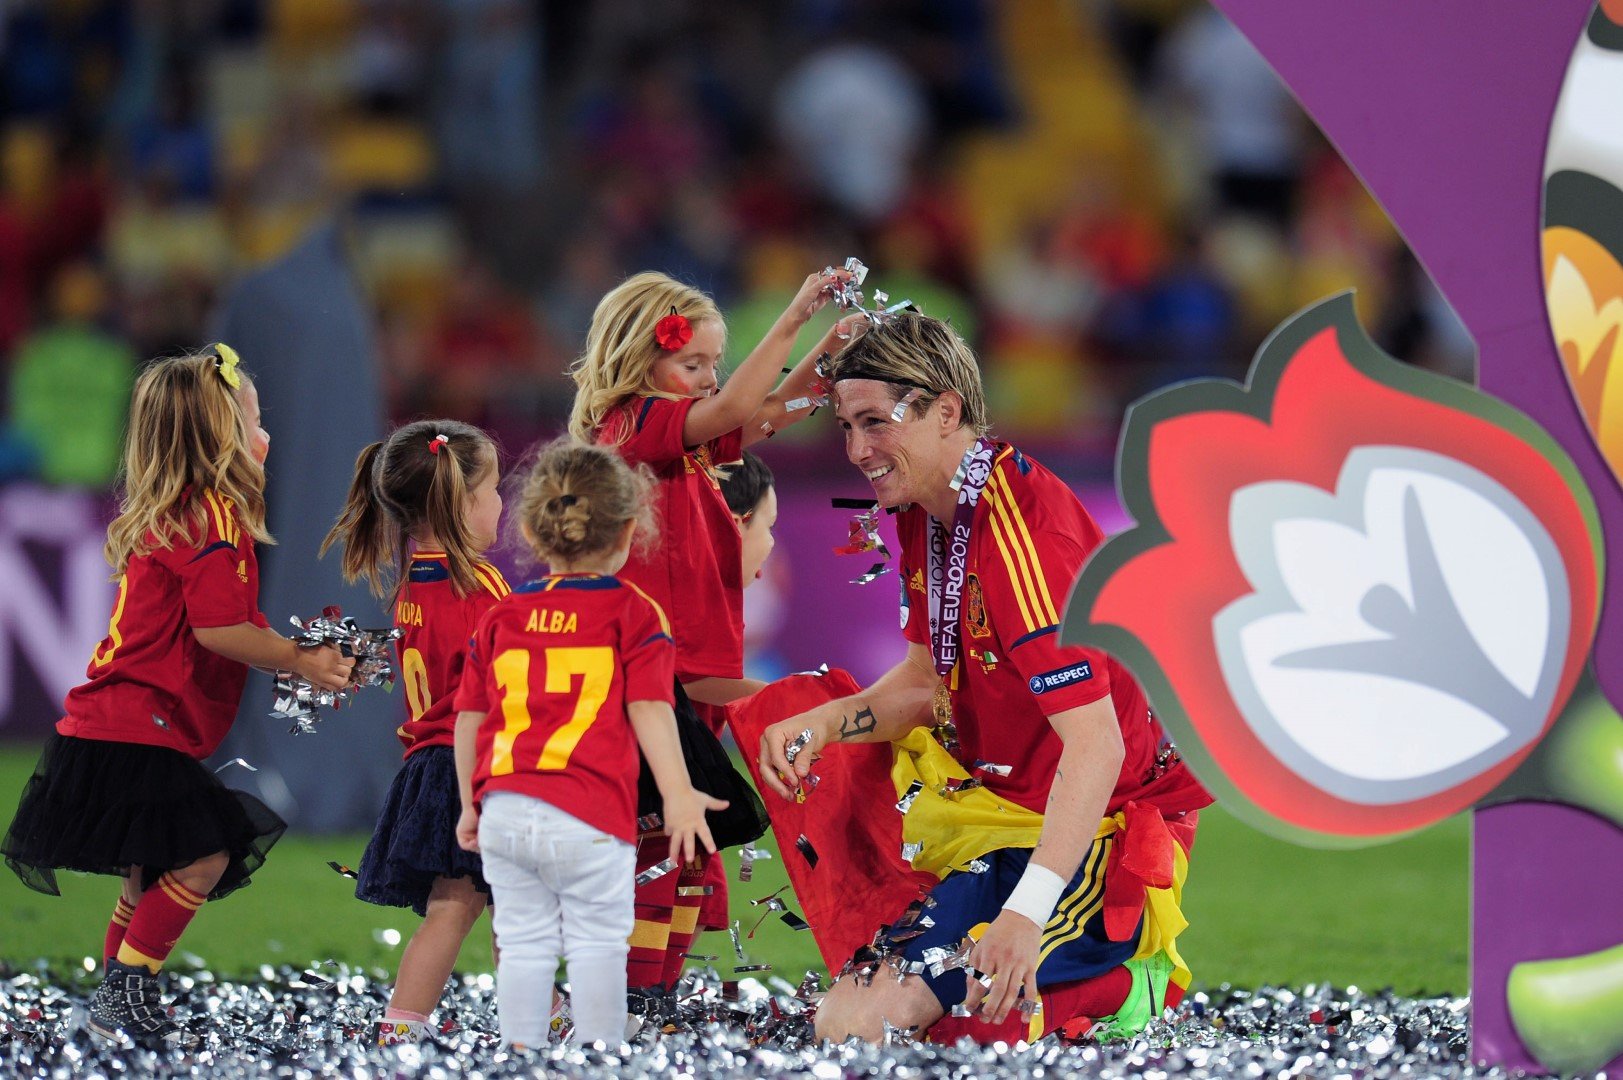 Още на игрището купонът започна след финала на Евро 2012. Фернандо Торес и няколко хлапета - негови и на съотборници, се забавляват след спечелената титла. Неслучайно прякорът му бе Хлапето...